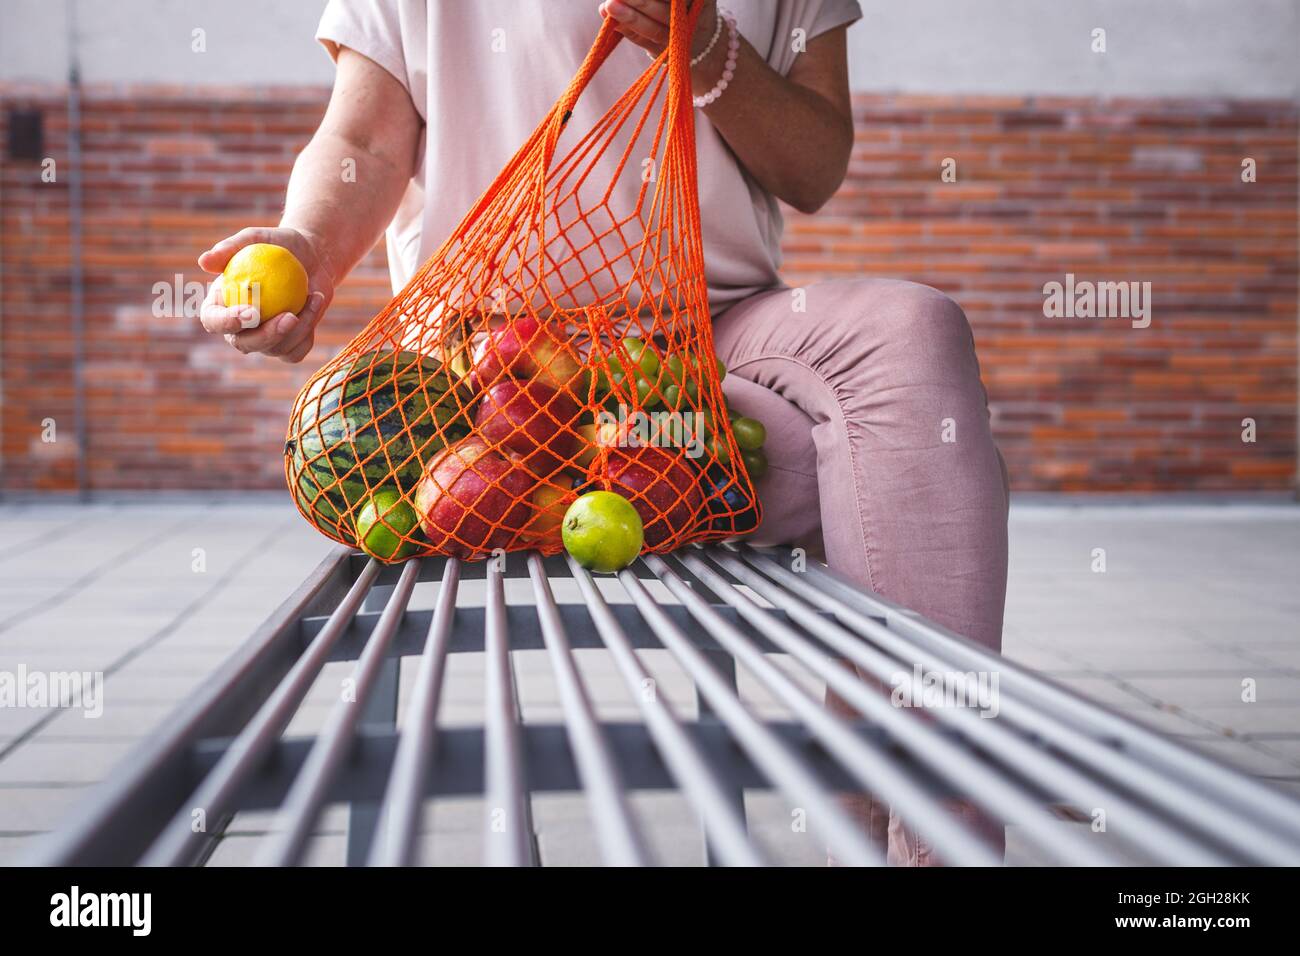 Femme avec sac en maille réutilisable assise sur un banc en ville. Se reposer au banc après avoir fait des achats de fruits au supermarché. Concept zéro déchet et sans plastique Banque D'Images